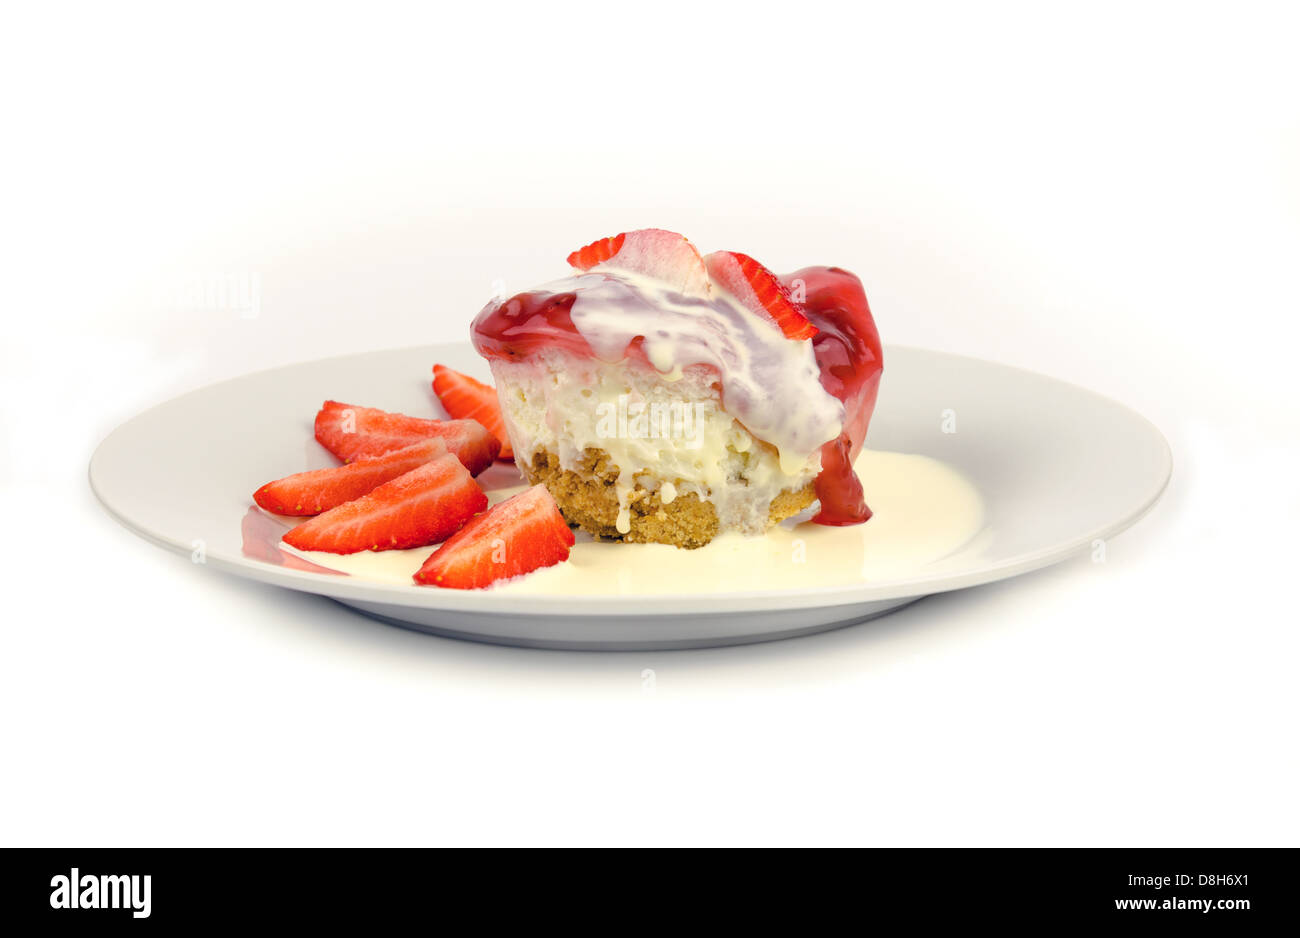 Strawberry Cheesecake con fresas frescas y crema Foto de stock